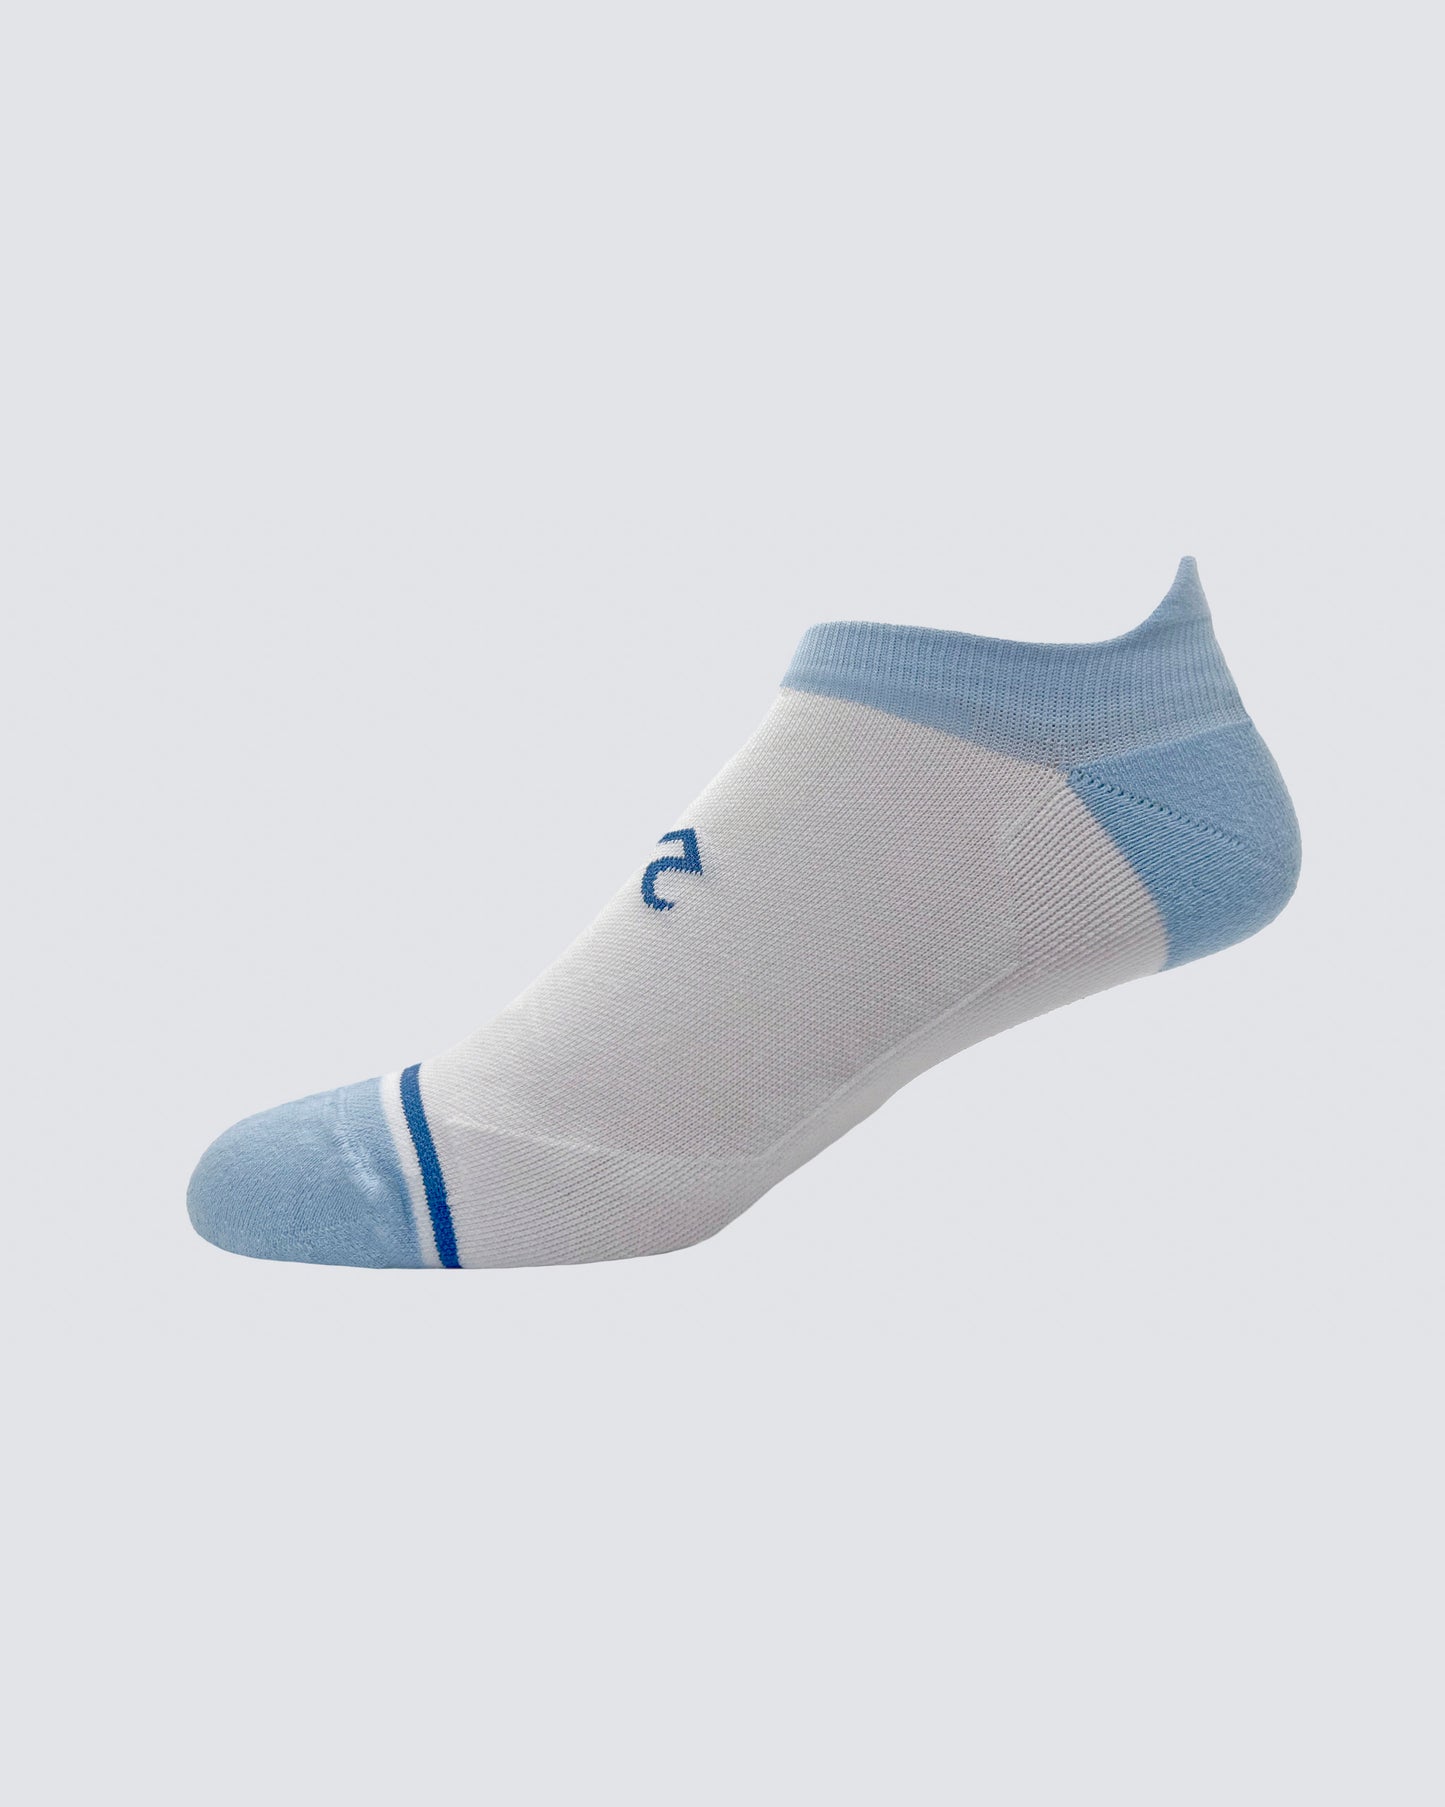 Baltic Socks in White/Light Blue